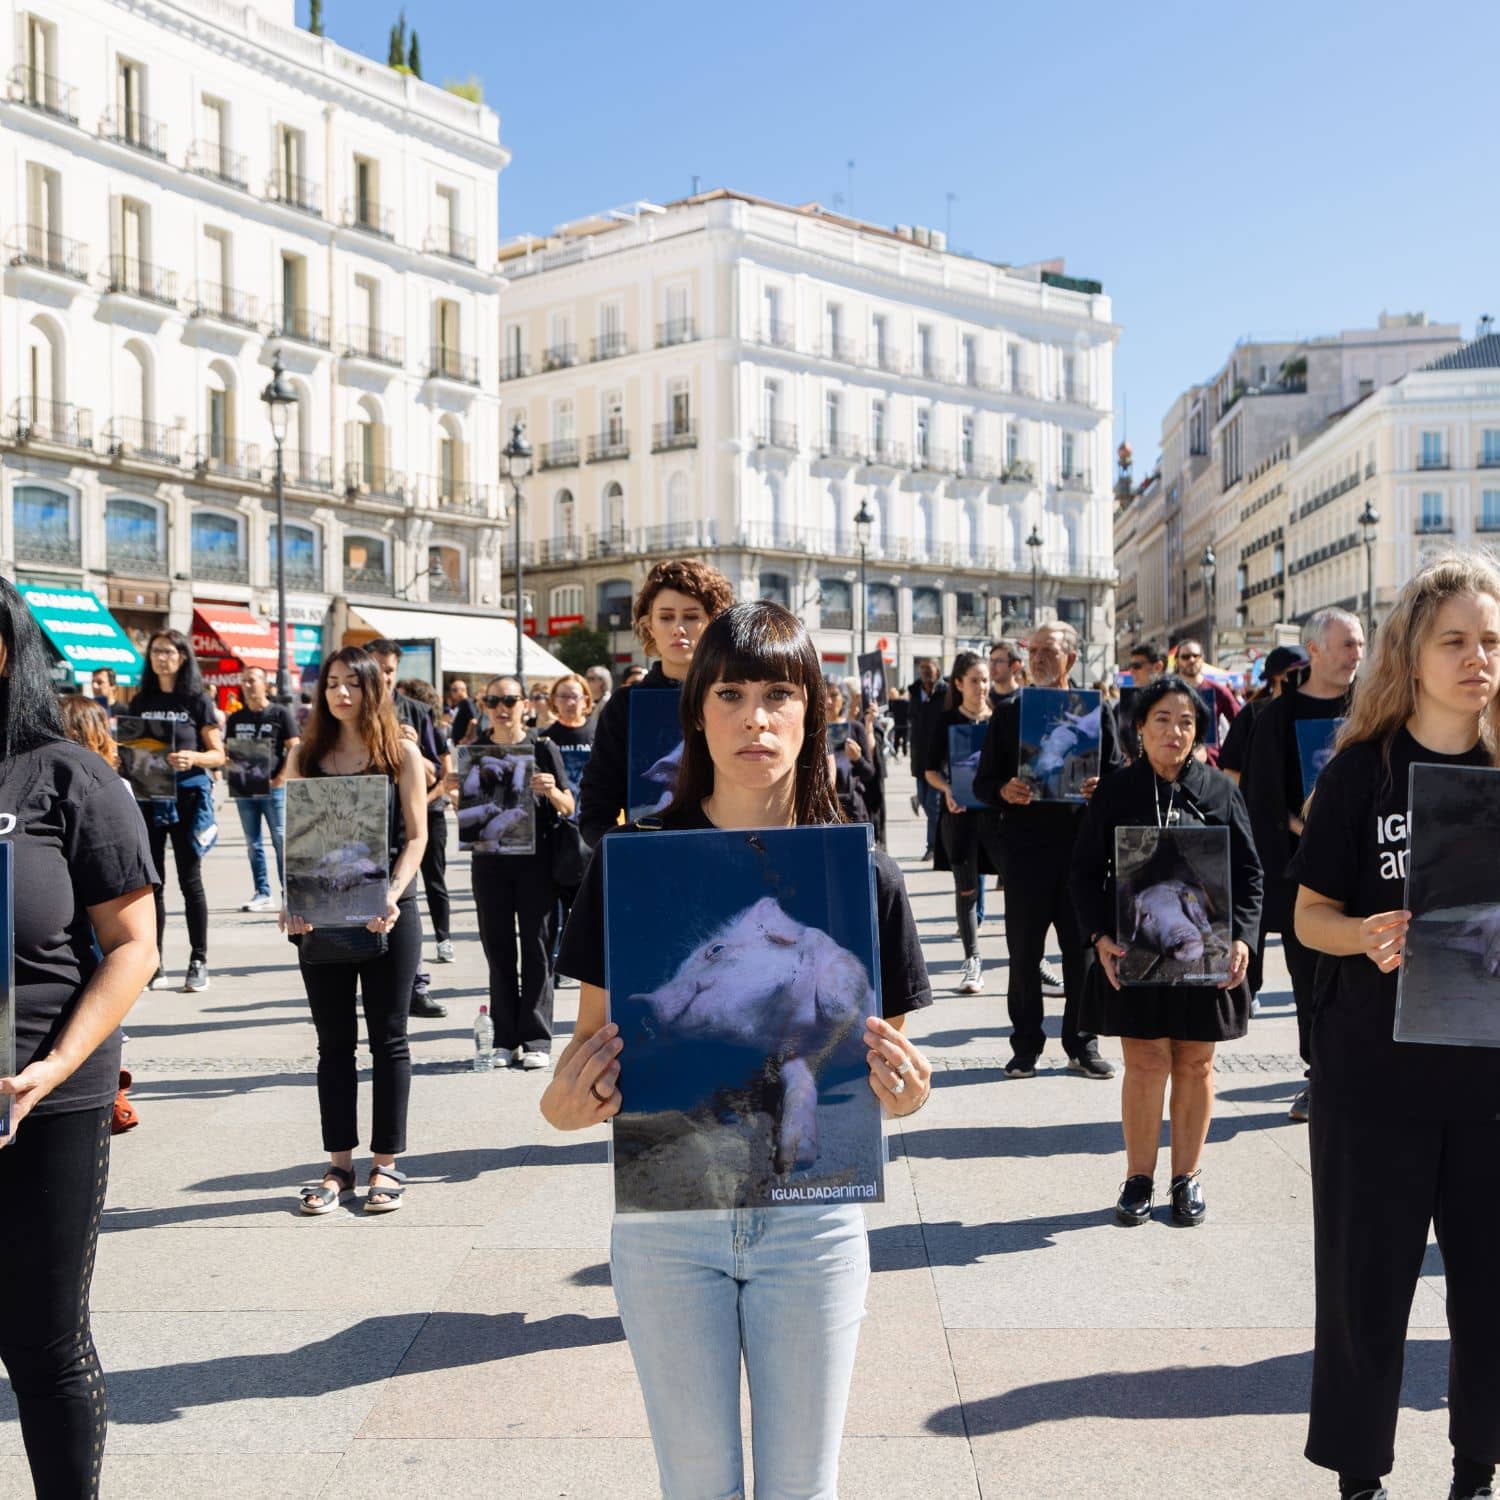 Activistas de Igualdad Animal ante la Puerta del Sol en Madrid protestan contra la crueldad de las granjas porcinas.